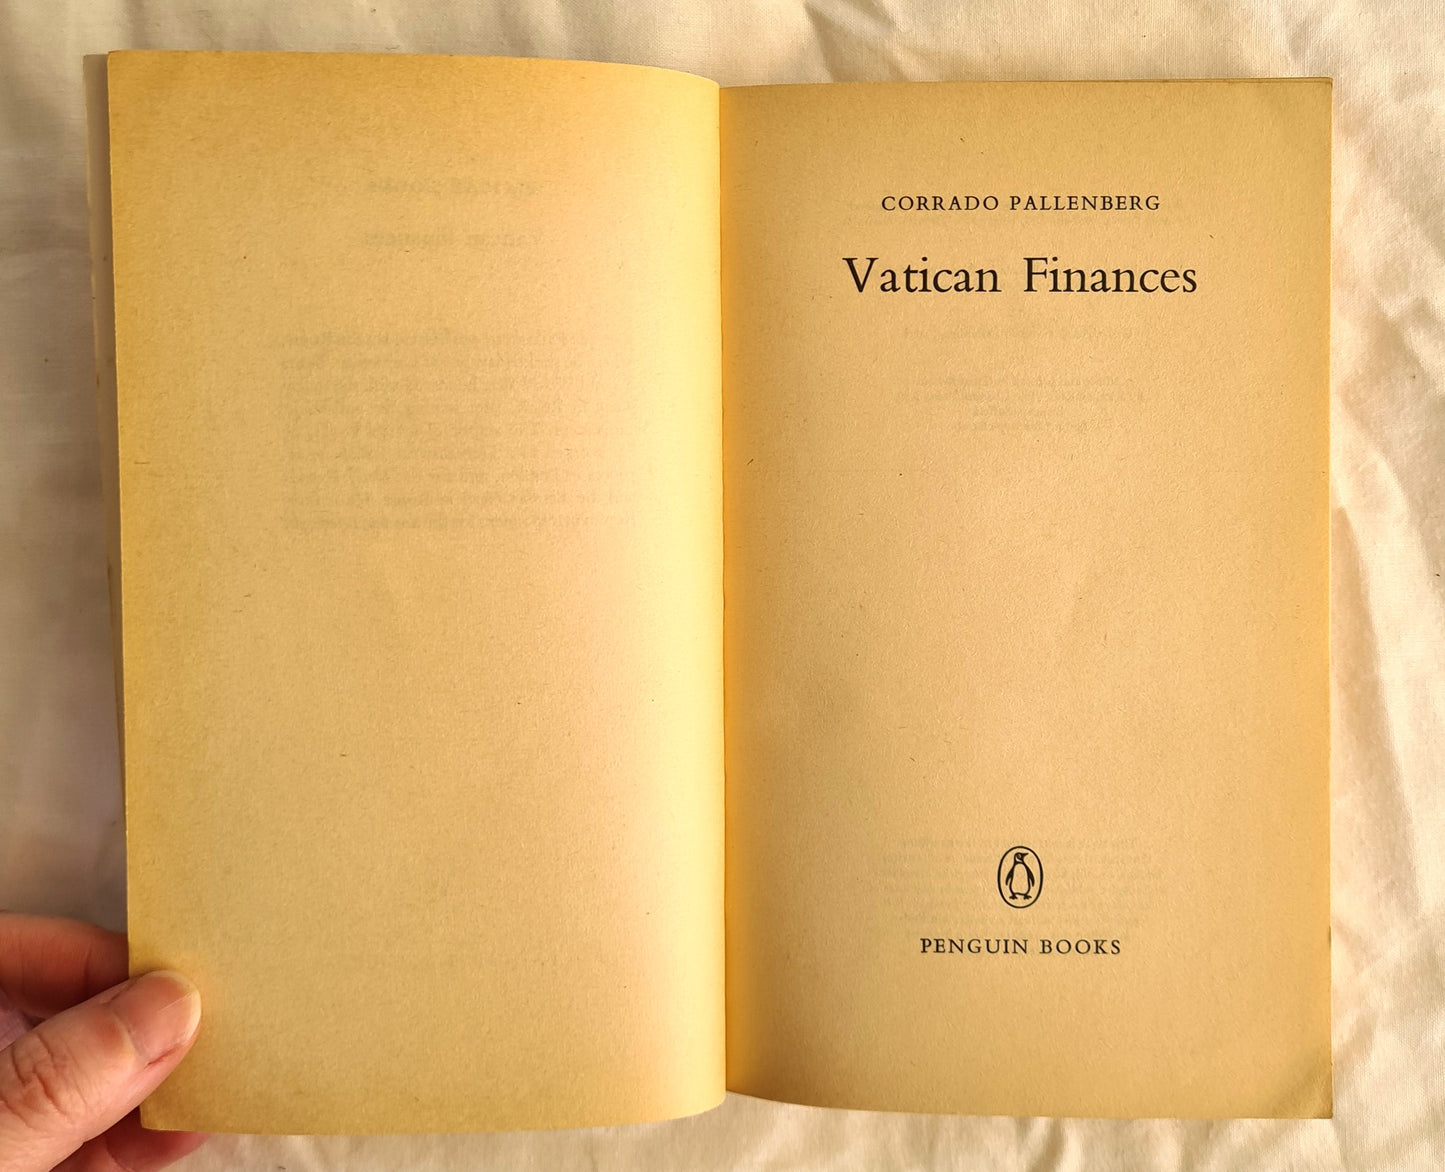 Vatican Finances by Corrado Pallenberg